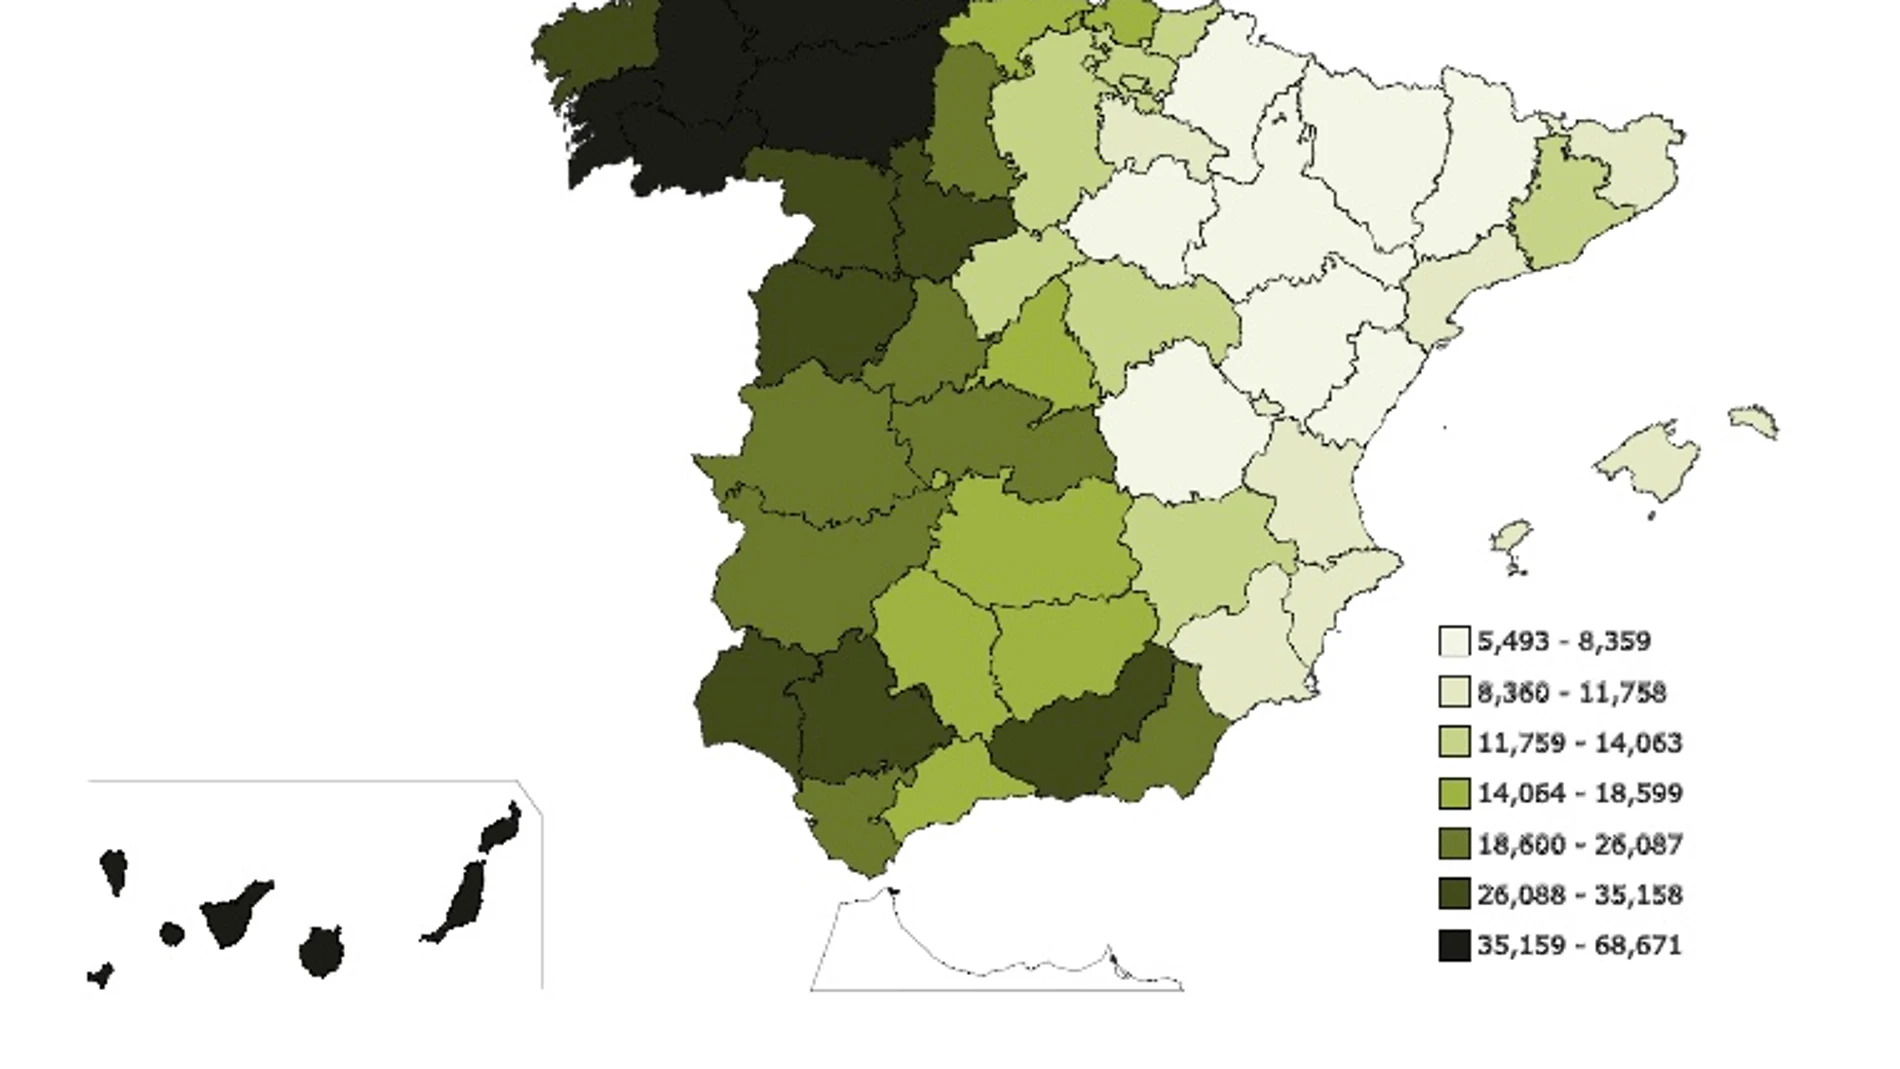 Mapa de España según el número de personas con el primer apellido "Rodríguez" en números absolutos.